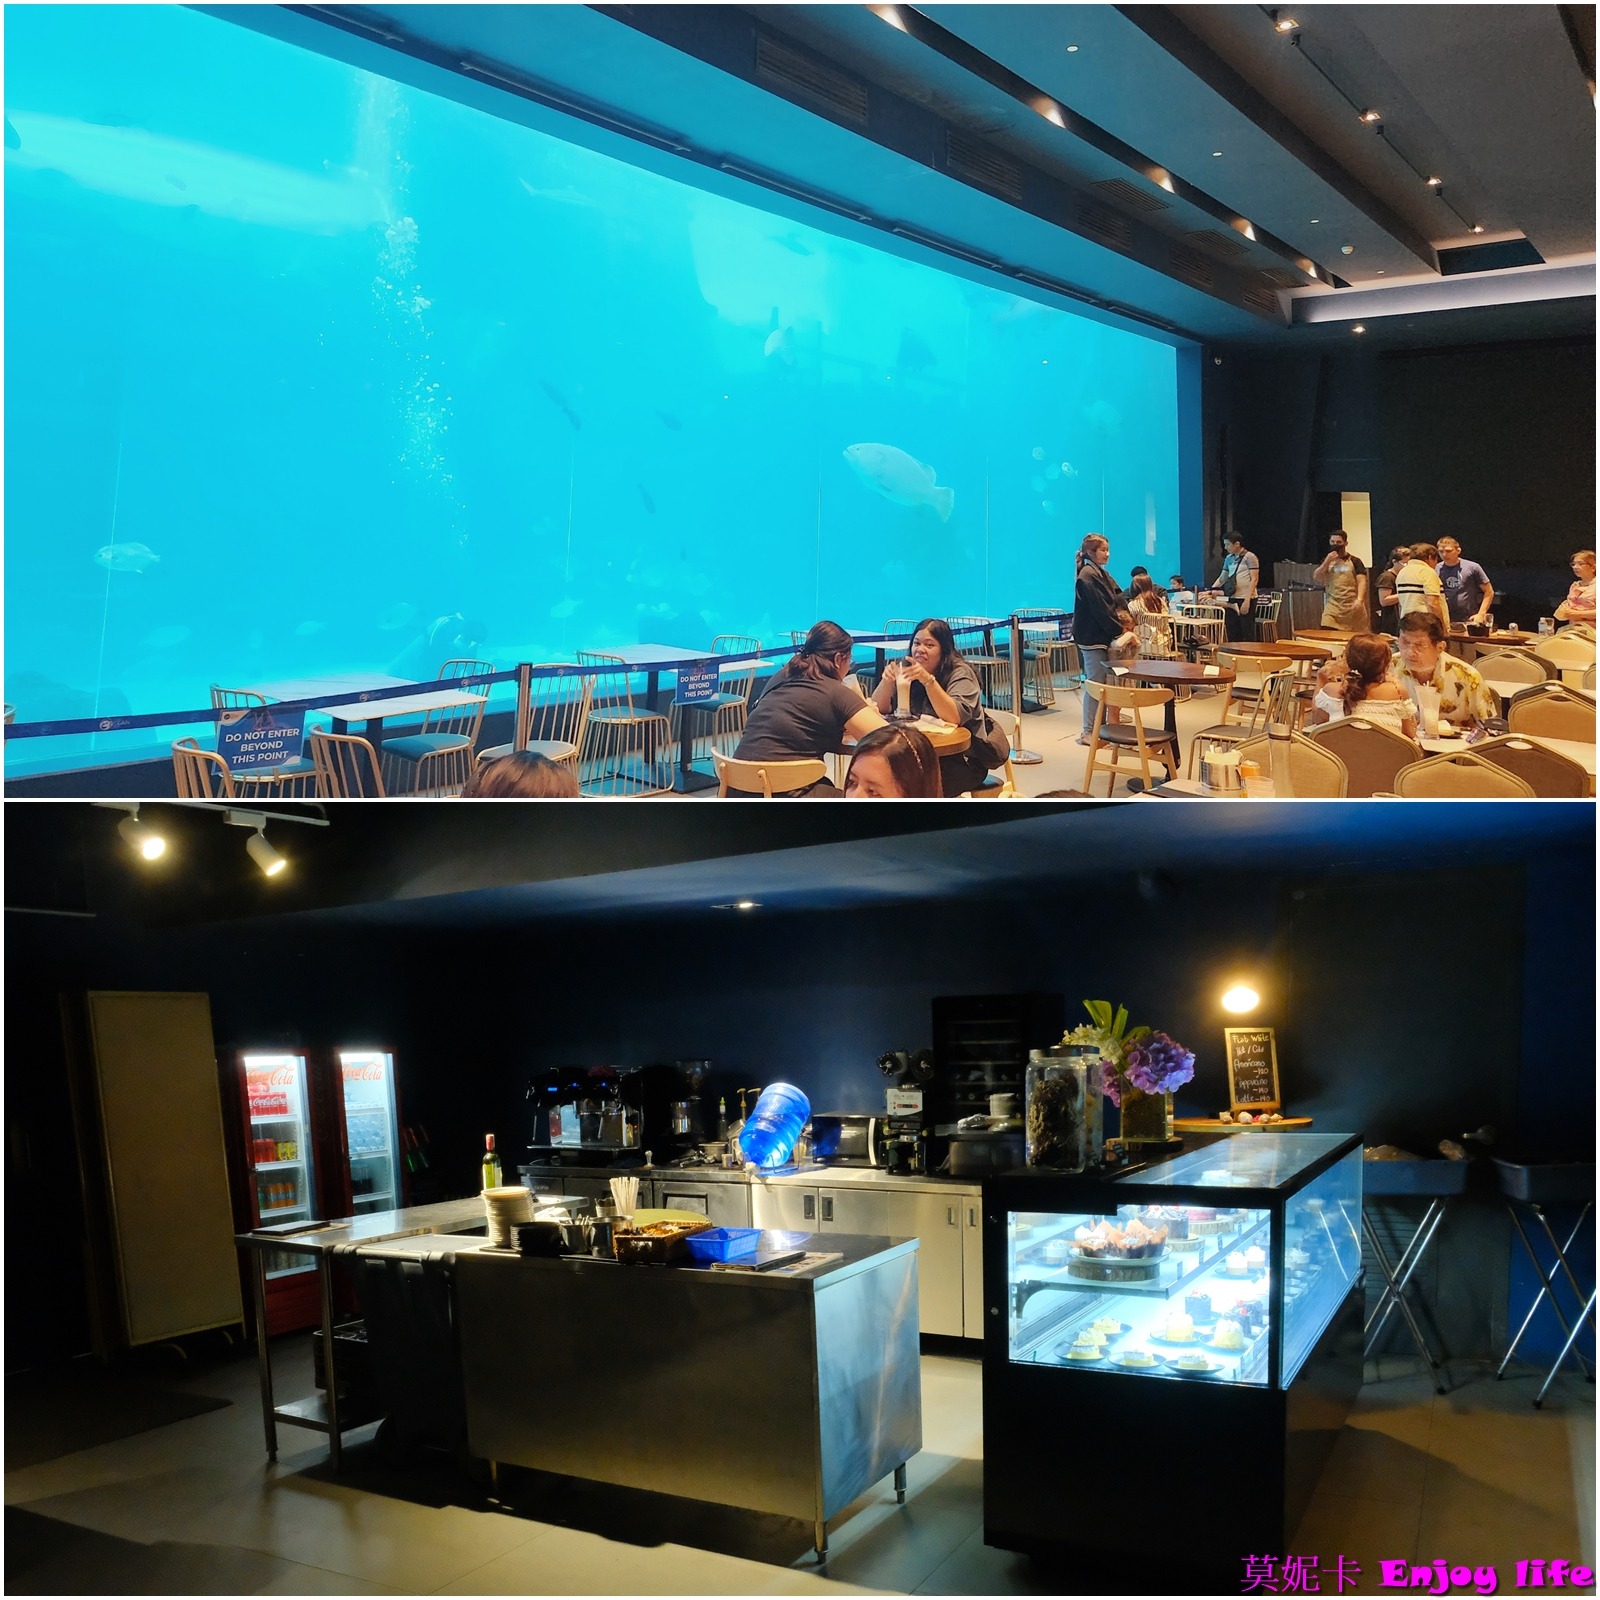 【宿霧景點】*Cebu Ocean Park宿霧海洋公園*，2019年新開幕，旁邊有SM seaside Mall，菲律賓最大的海洋公園，有餵魚秀跟鸚鵡秀表演，還有海底隧道跟餐廳可以看各種魚!!!